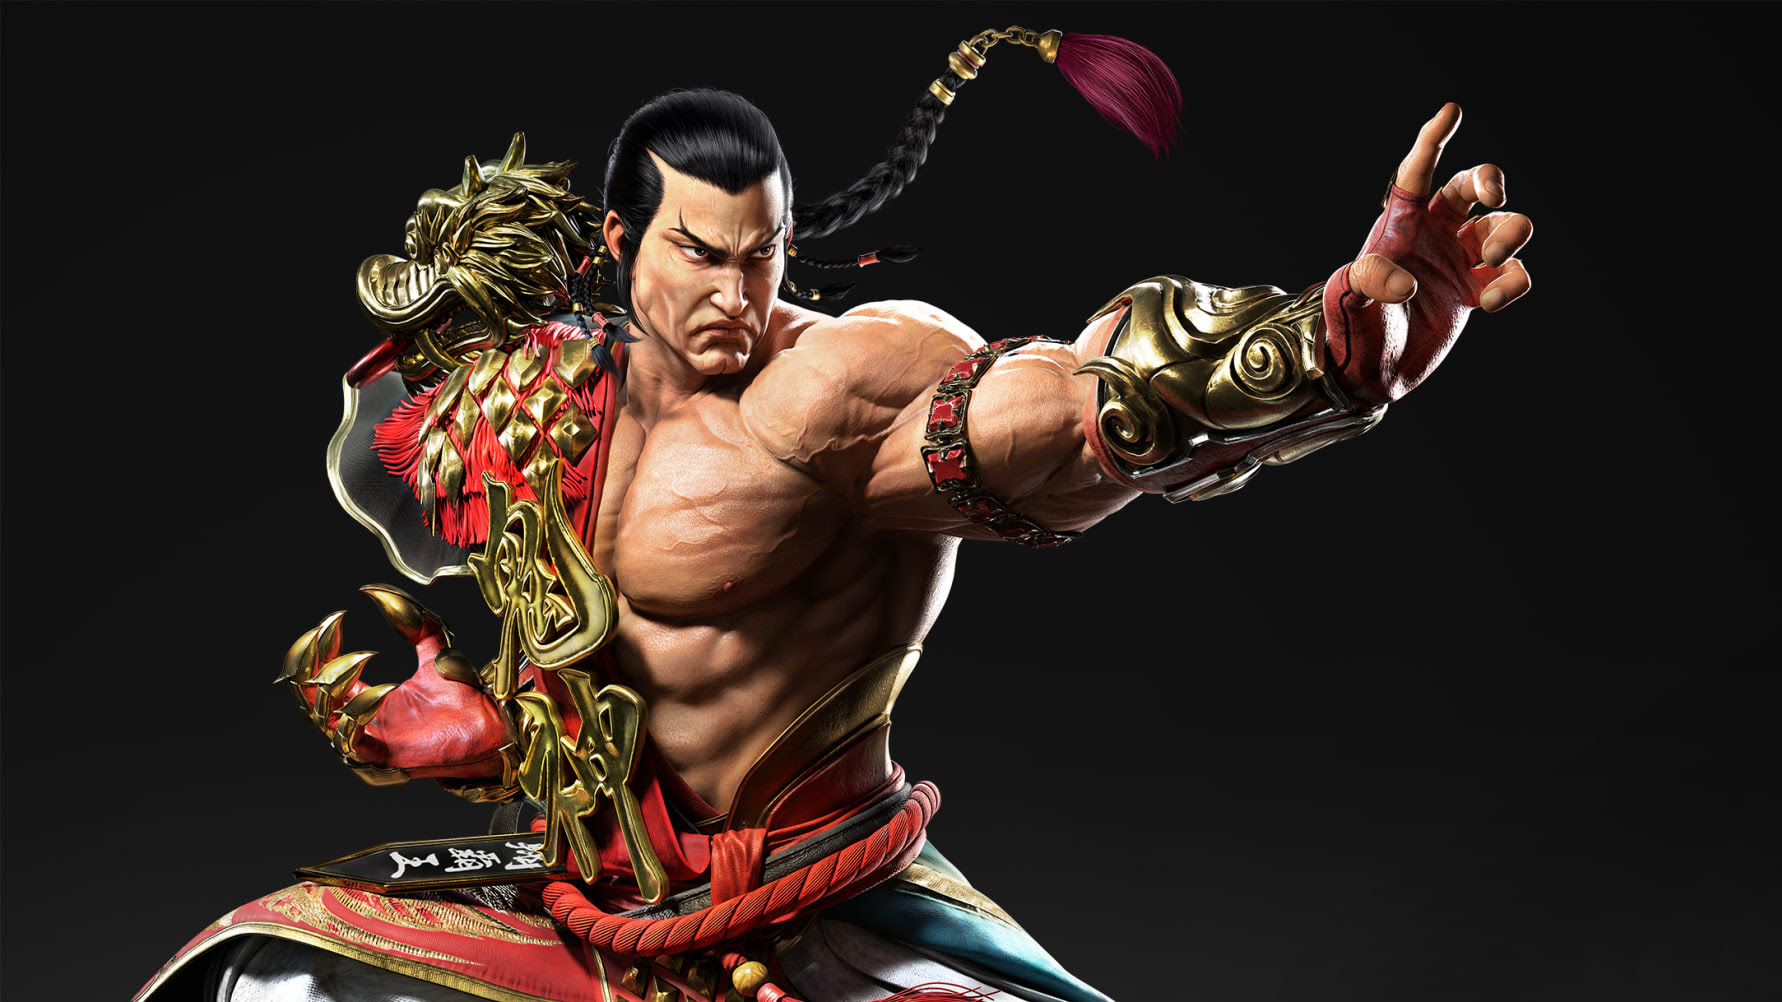 Tekken 8 contará com teste fechado em Outubro